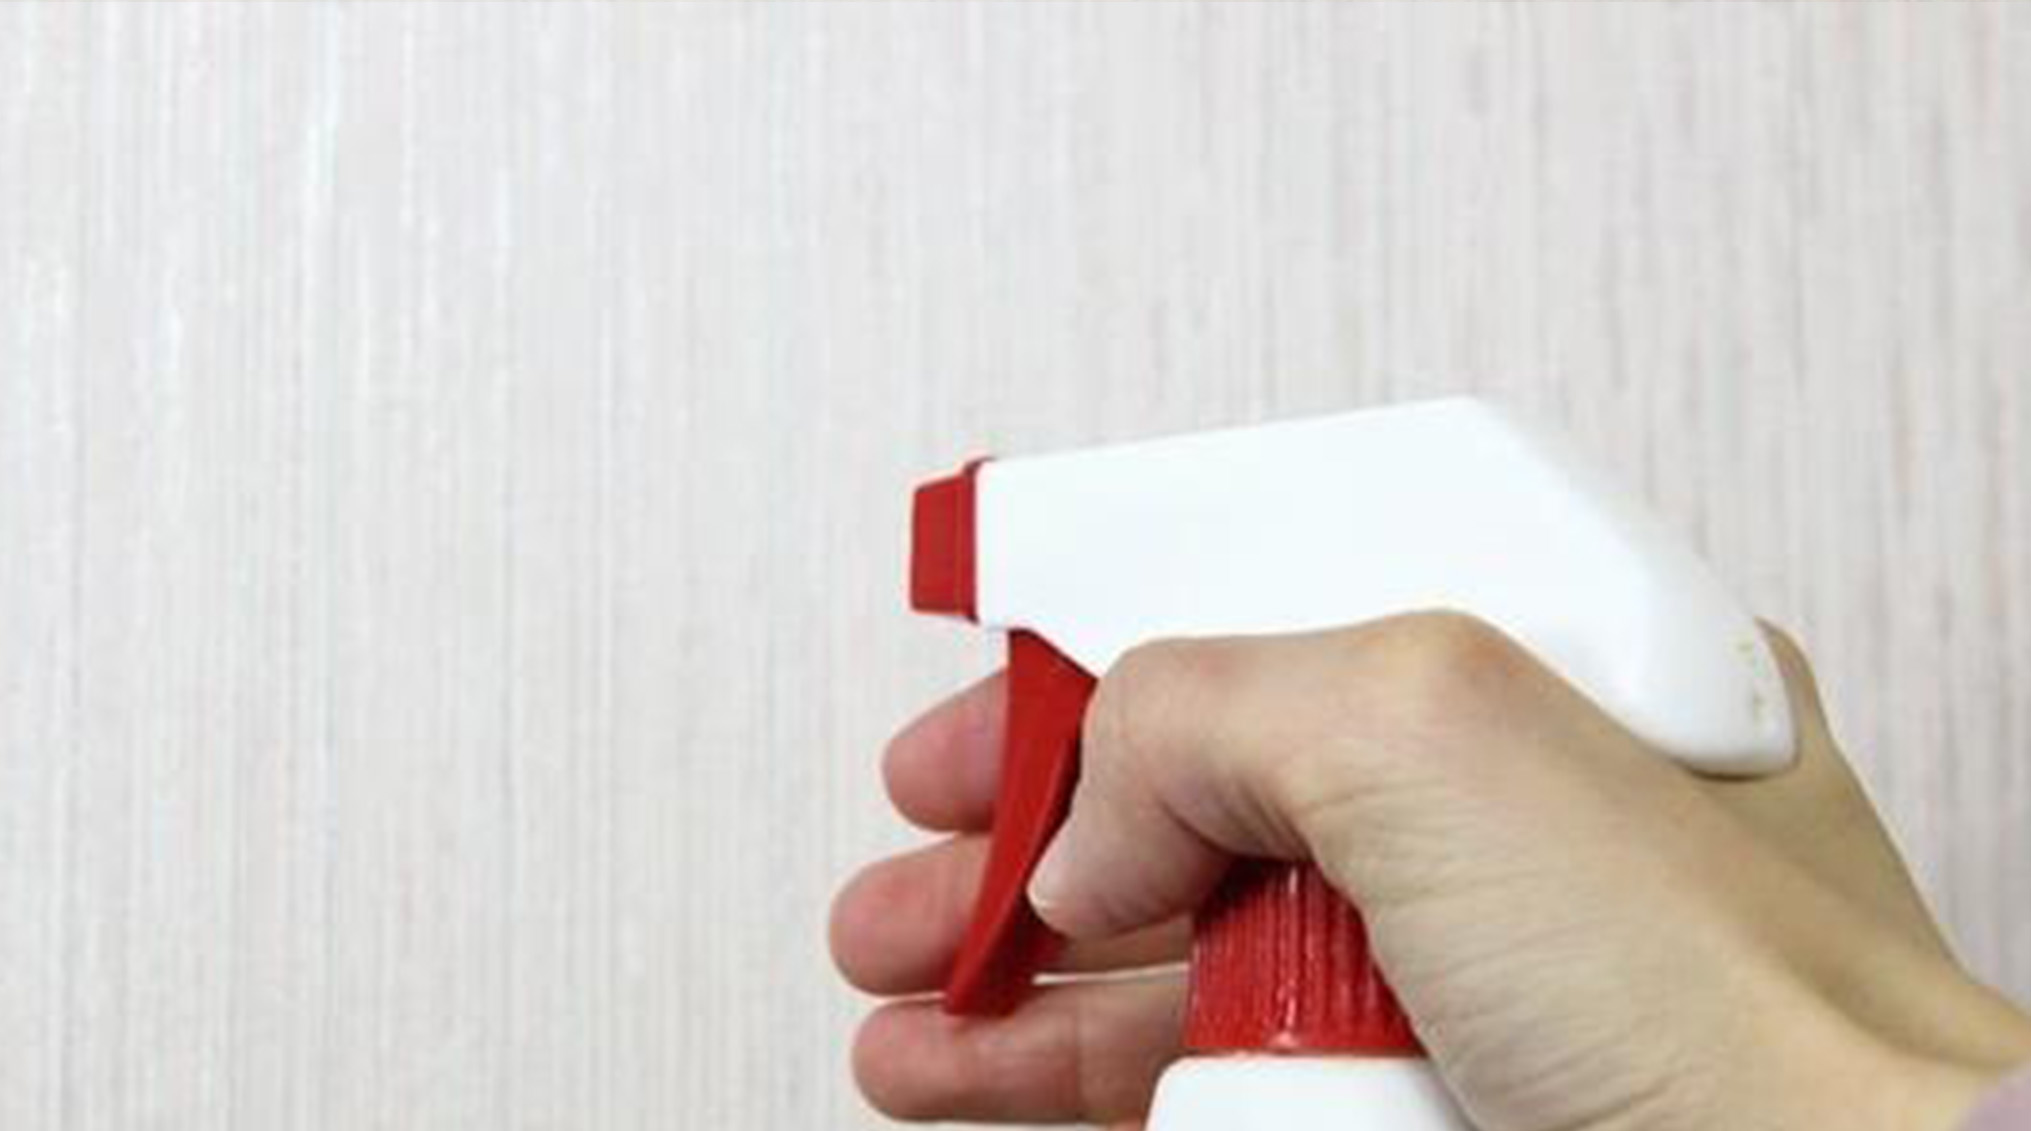 بهترین راه ها برای تمیز کردن کاغذ دیواری منزل!